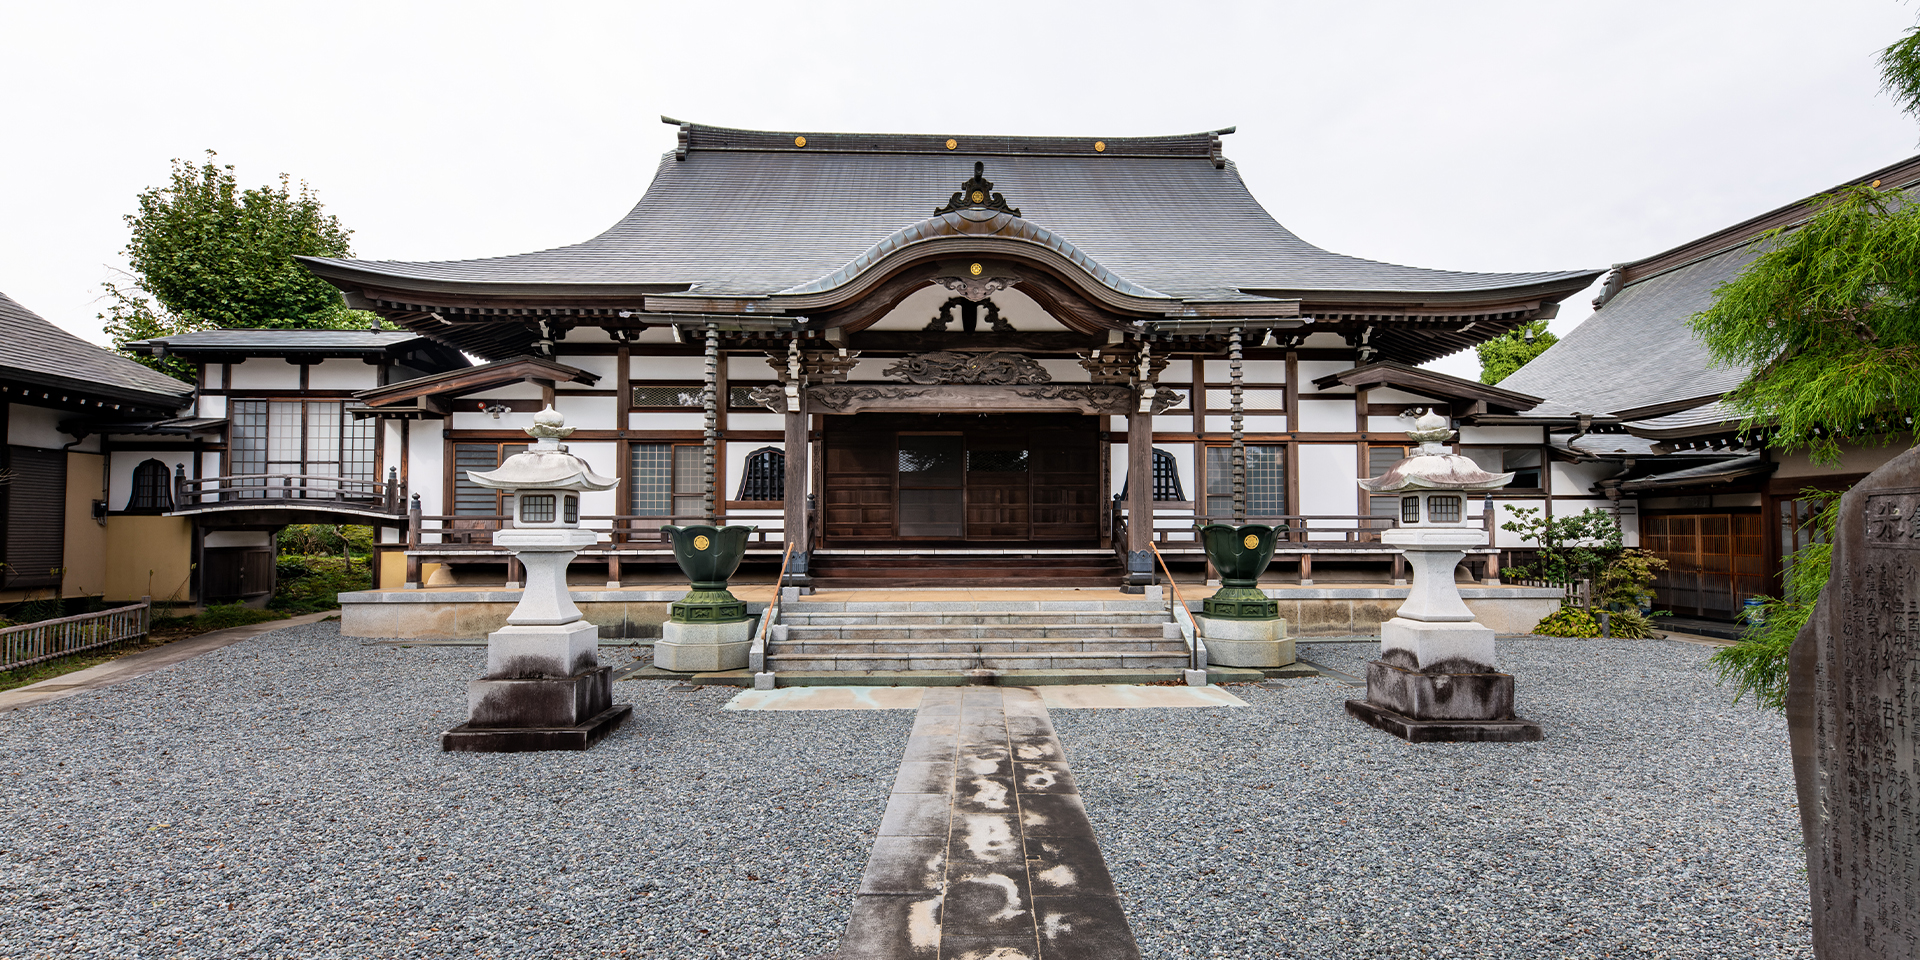 米倉寺